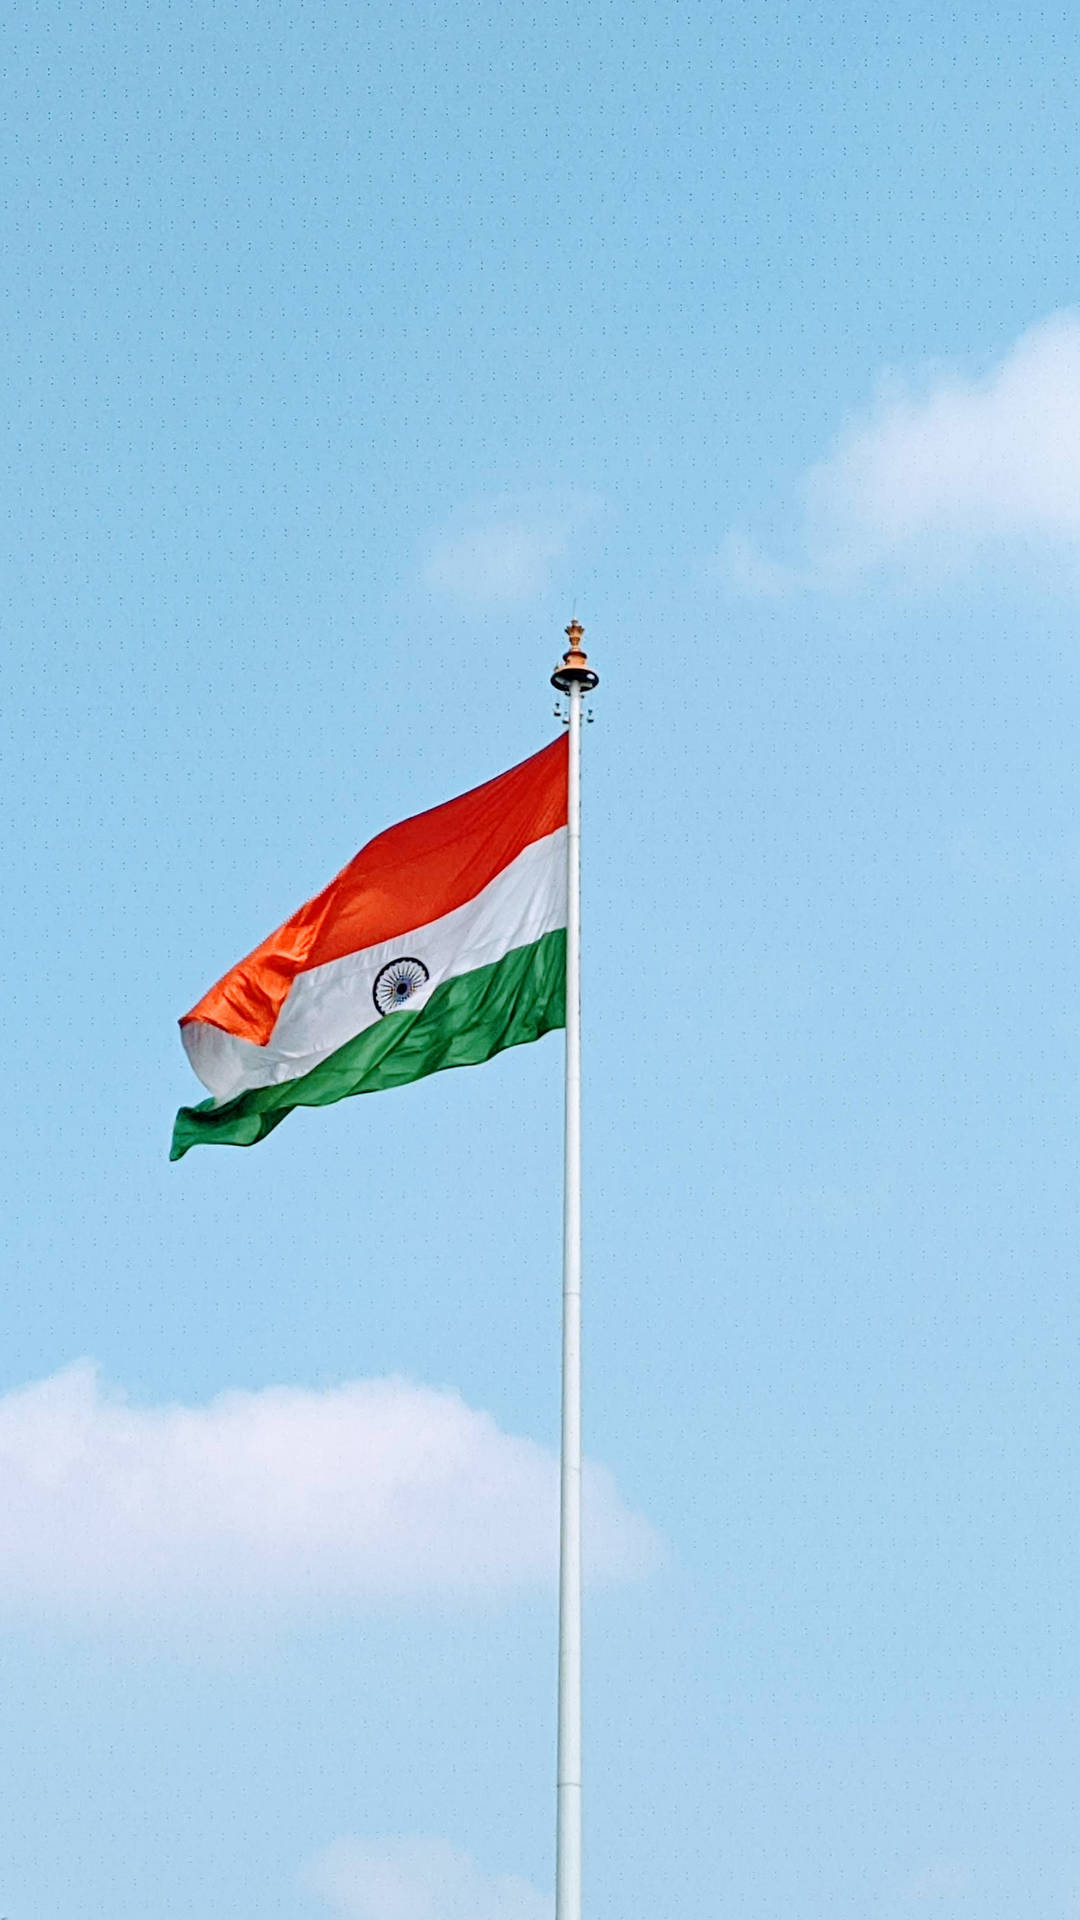 Tiranga Indian Flag On Pole Background